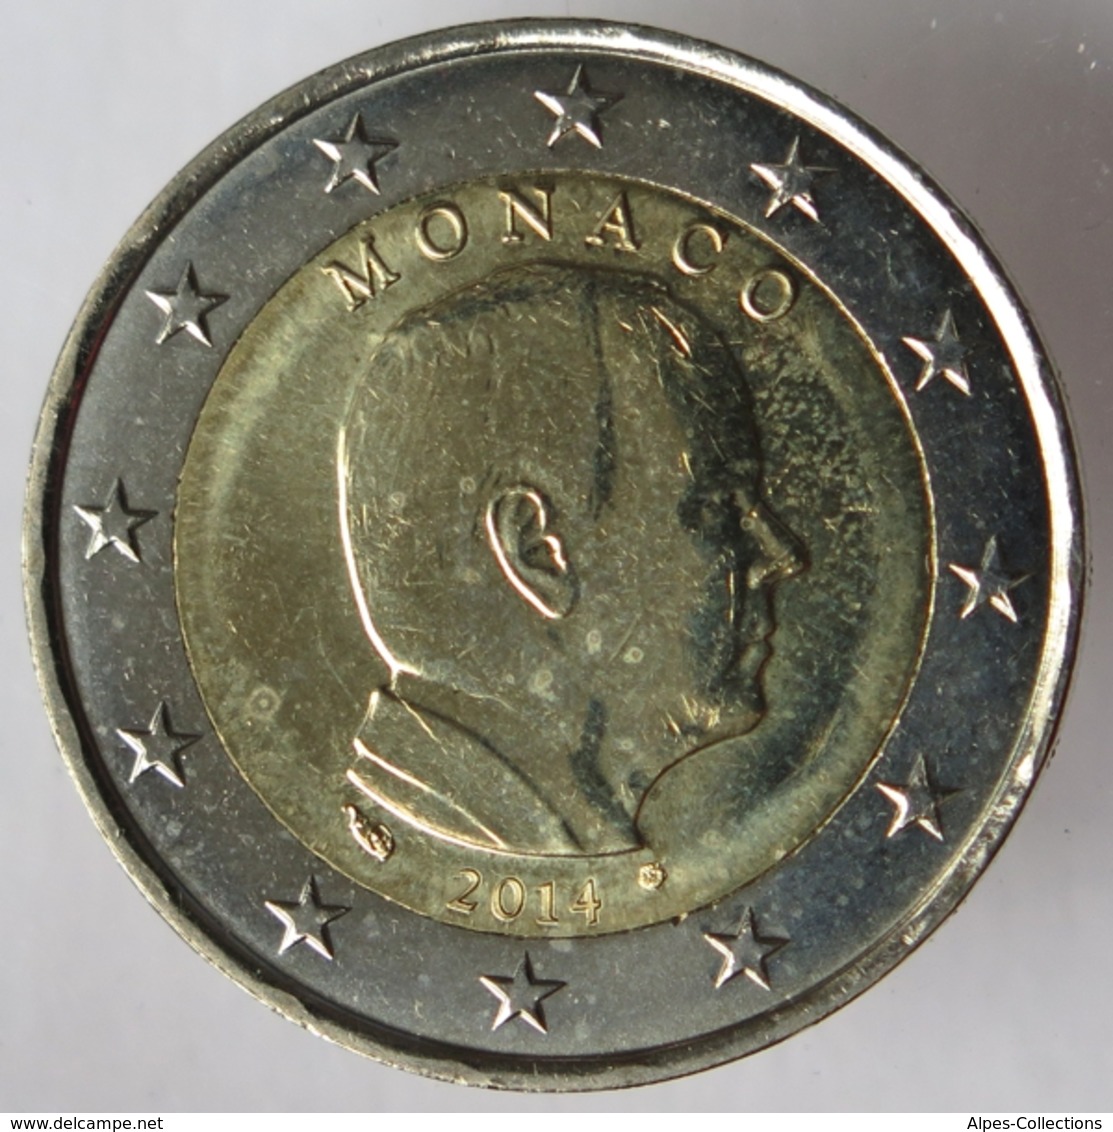 MO20014.1 - MONACO - 2 Euros - 2014 - Monaco